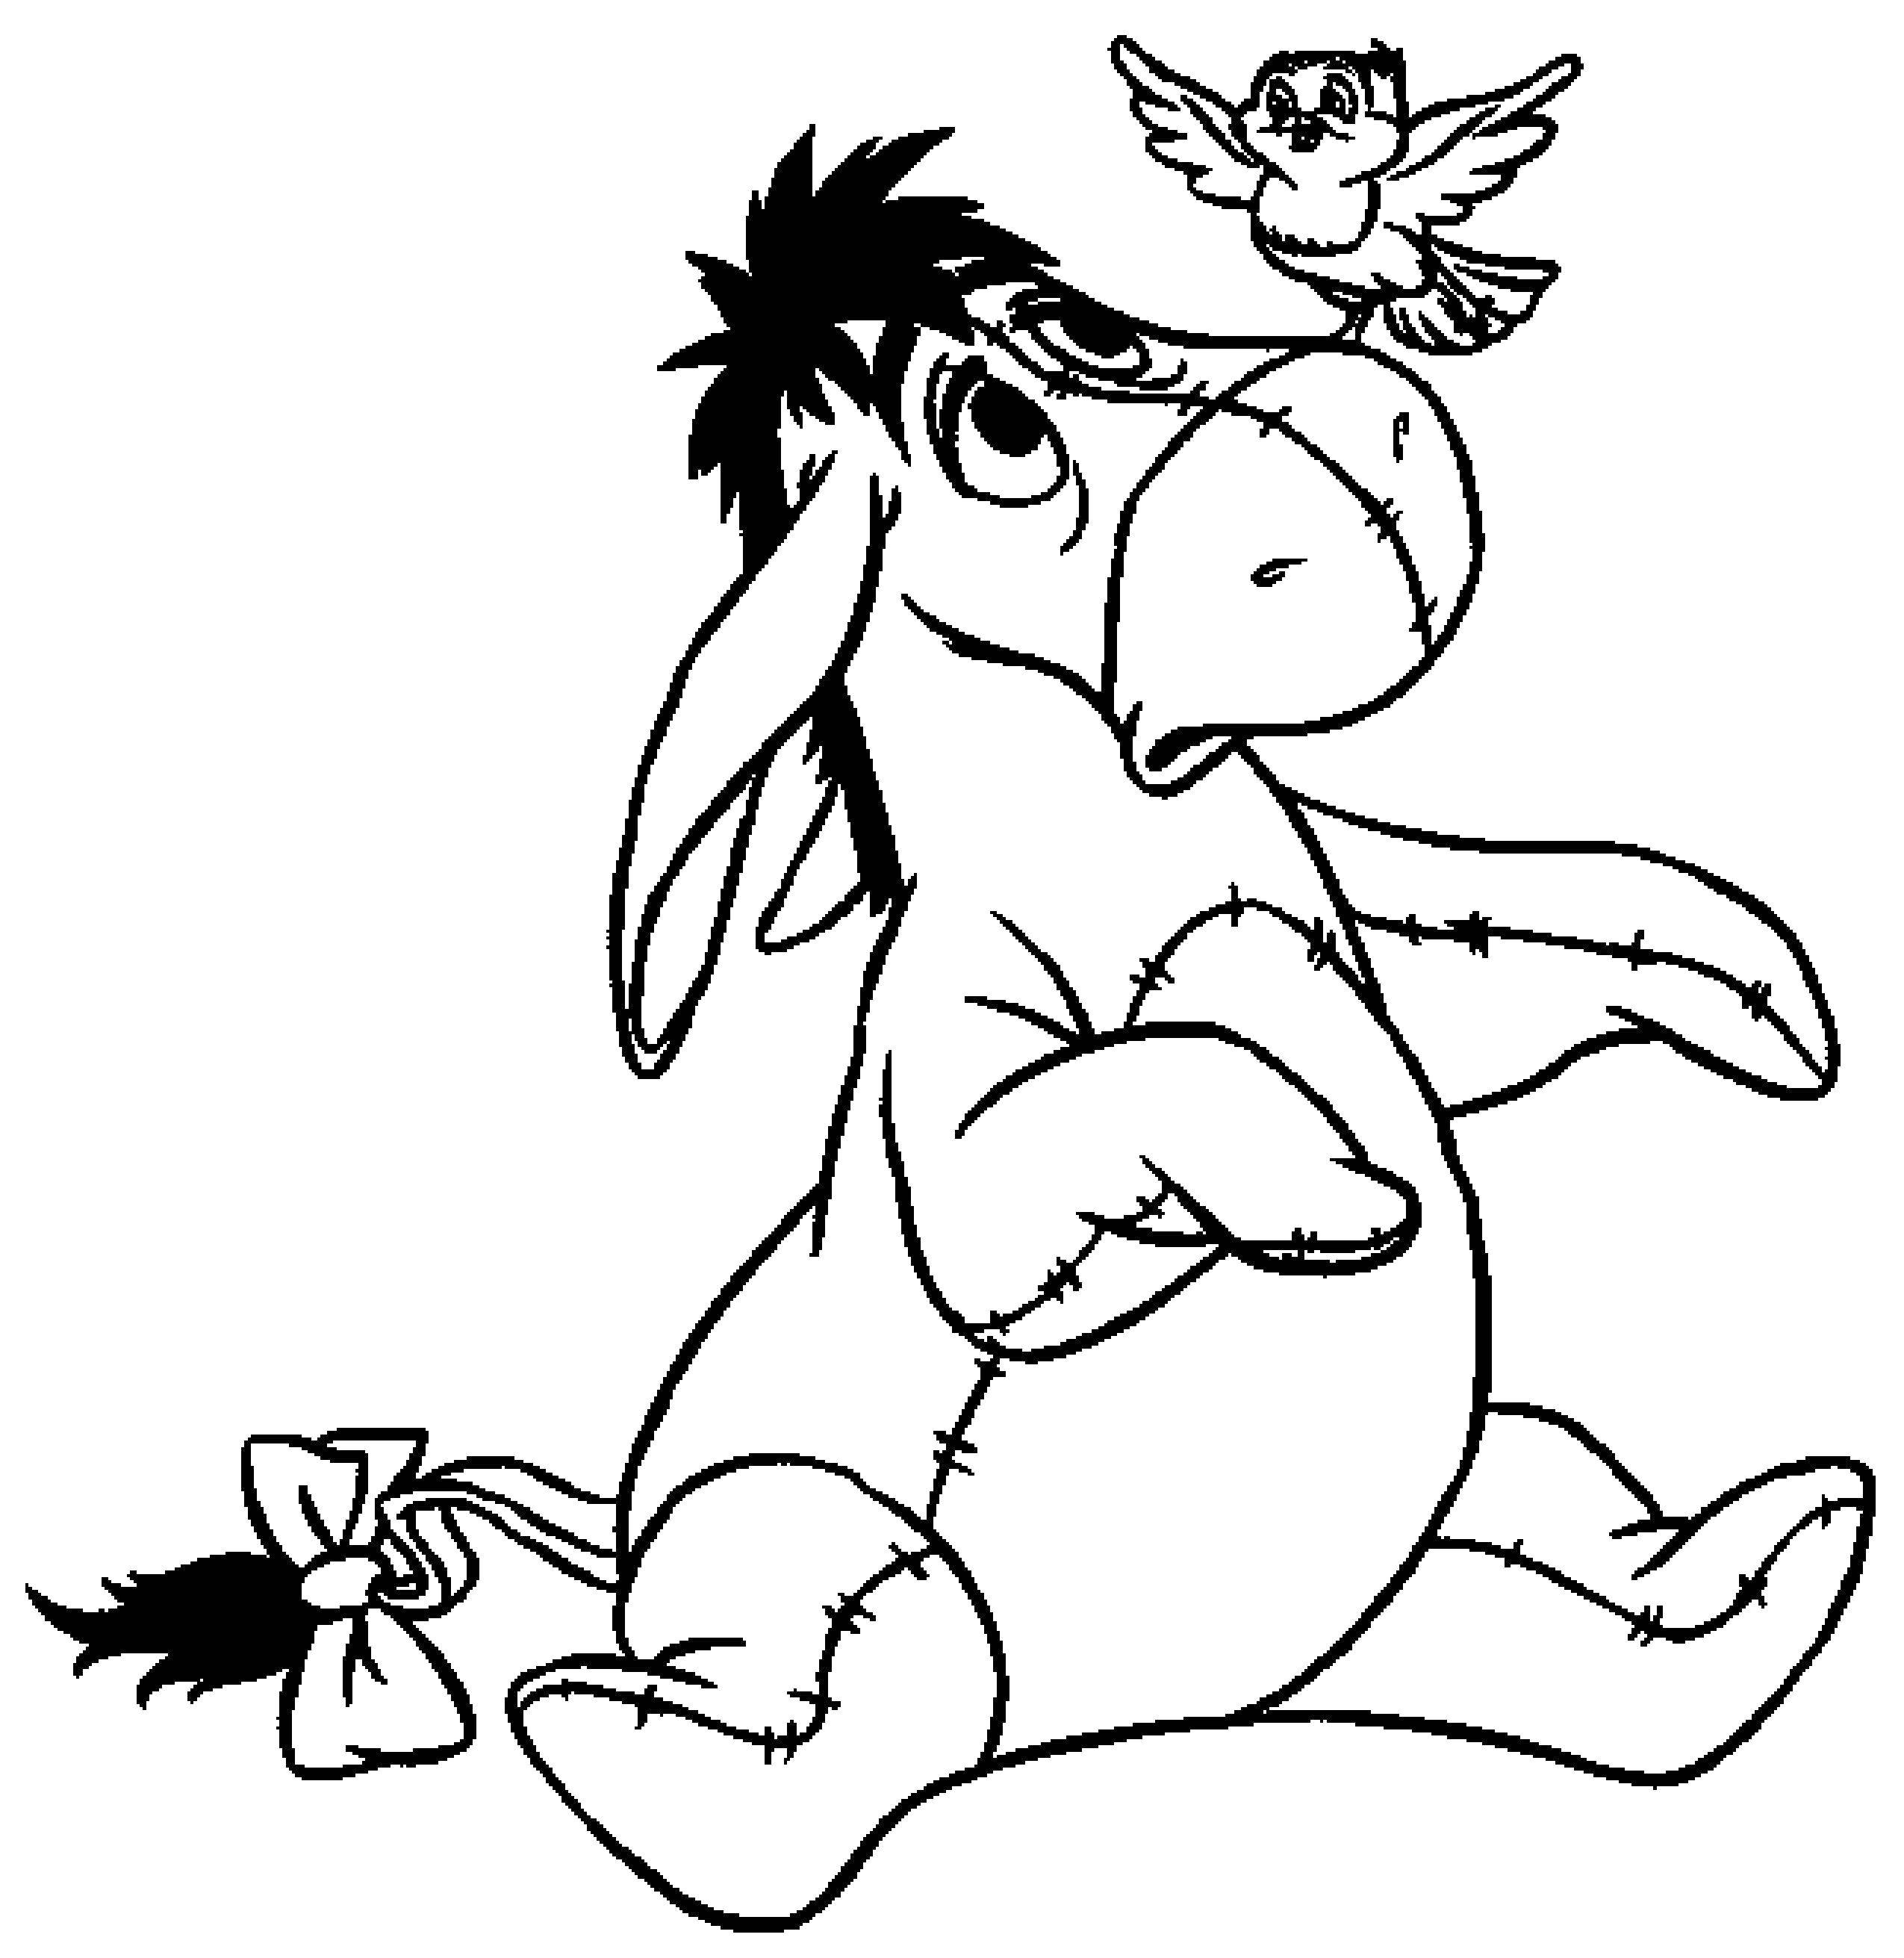 Раскраски из зарубежного мультфильма про Винни Пуха и его друзей для самых маленьких   Ослик иа из винни пуха 